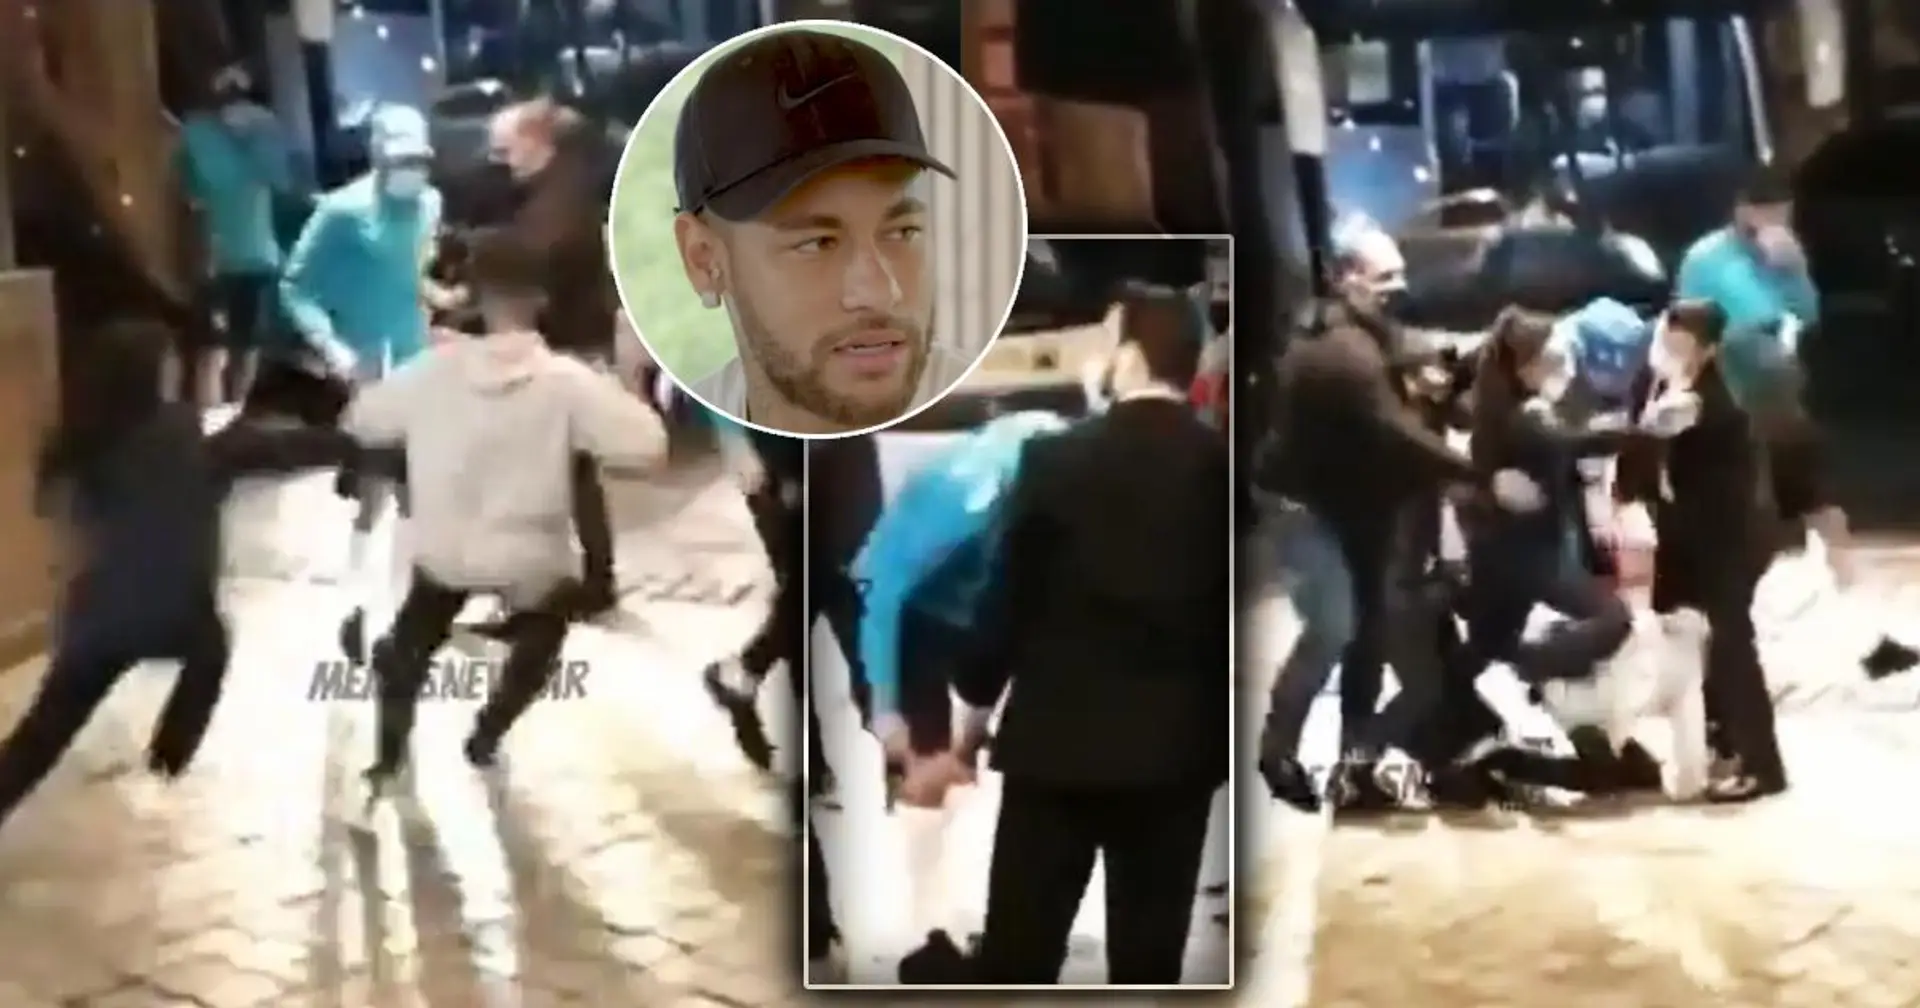 Dos fans chocaron contra Neymar al intentar tomarse una foto con el crack- Ney cojeó después del golpe